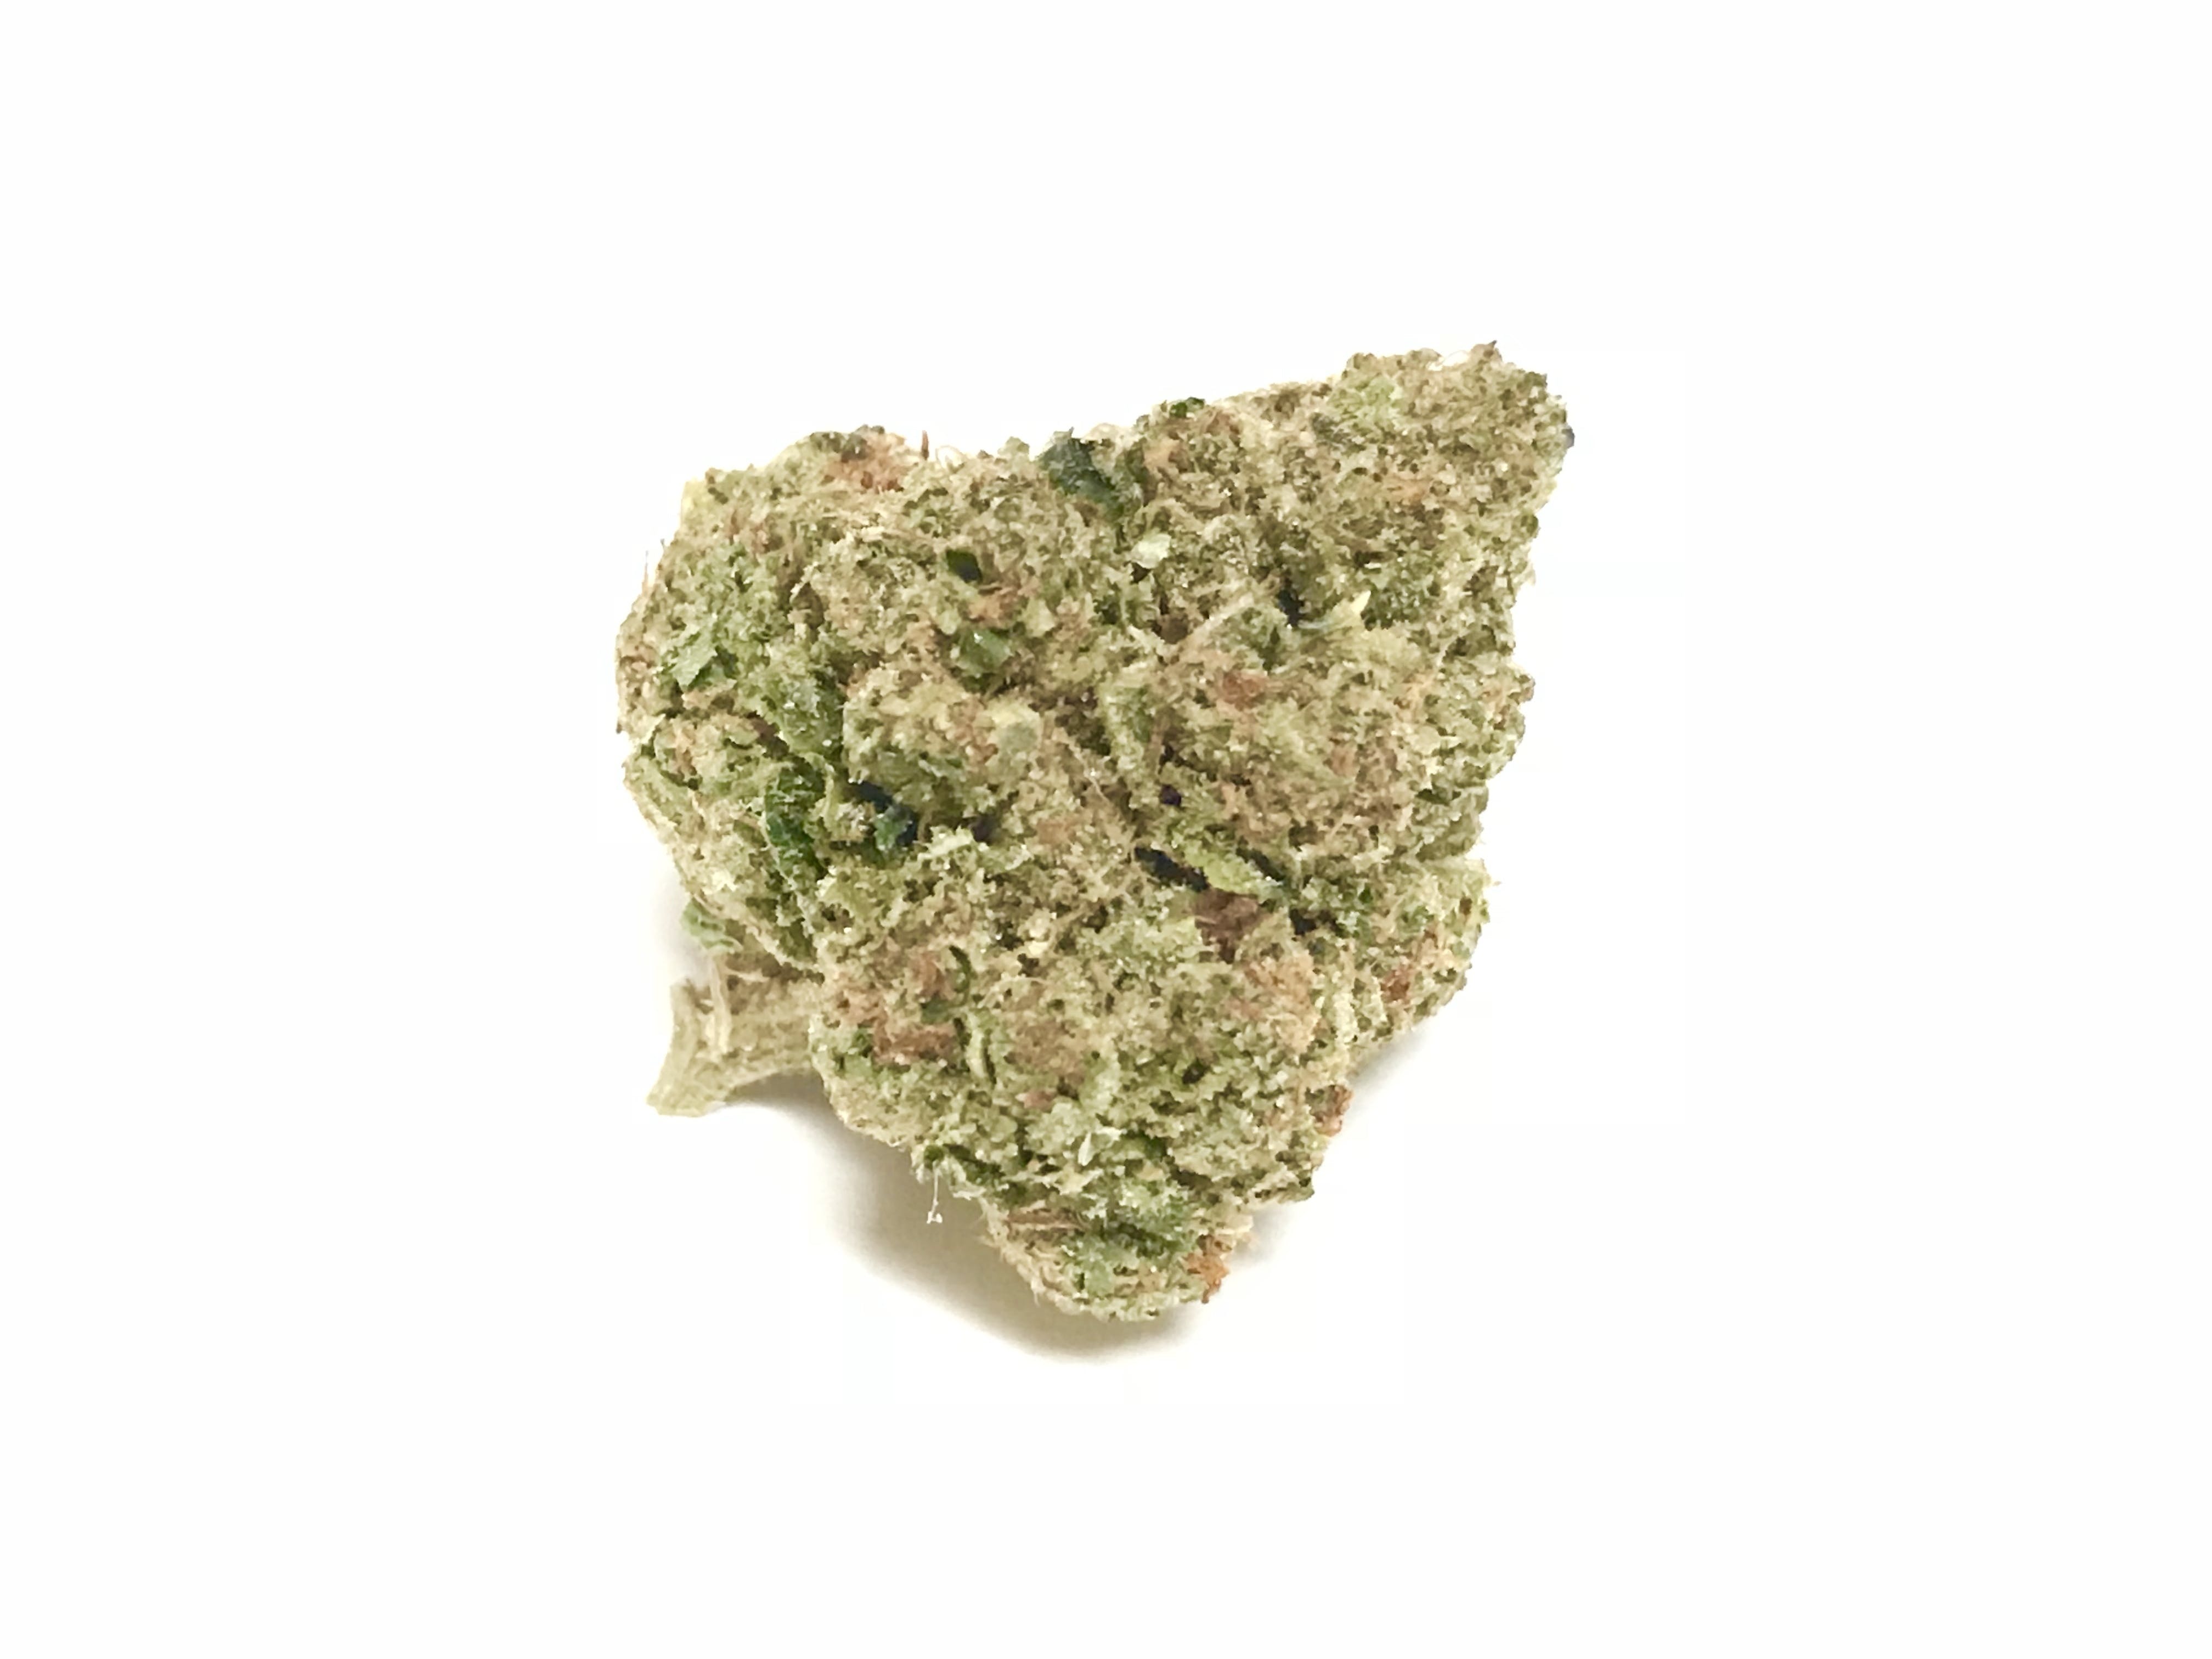 marijuana-dispensaries-4430-live-oak-ave-arcadia-topshelf-zen-og-5g-4035